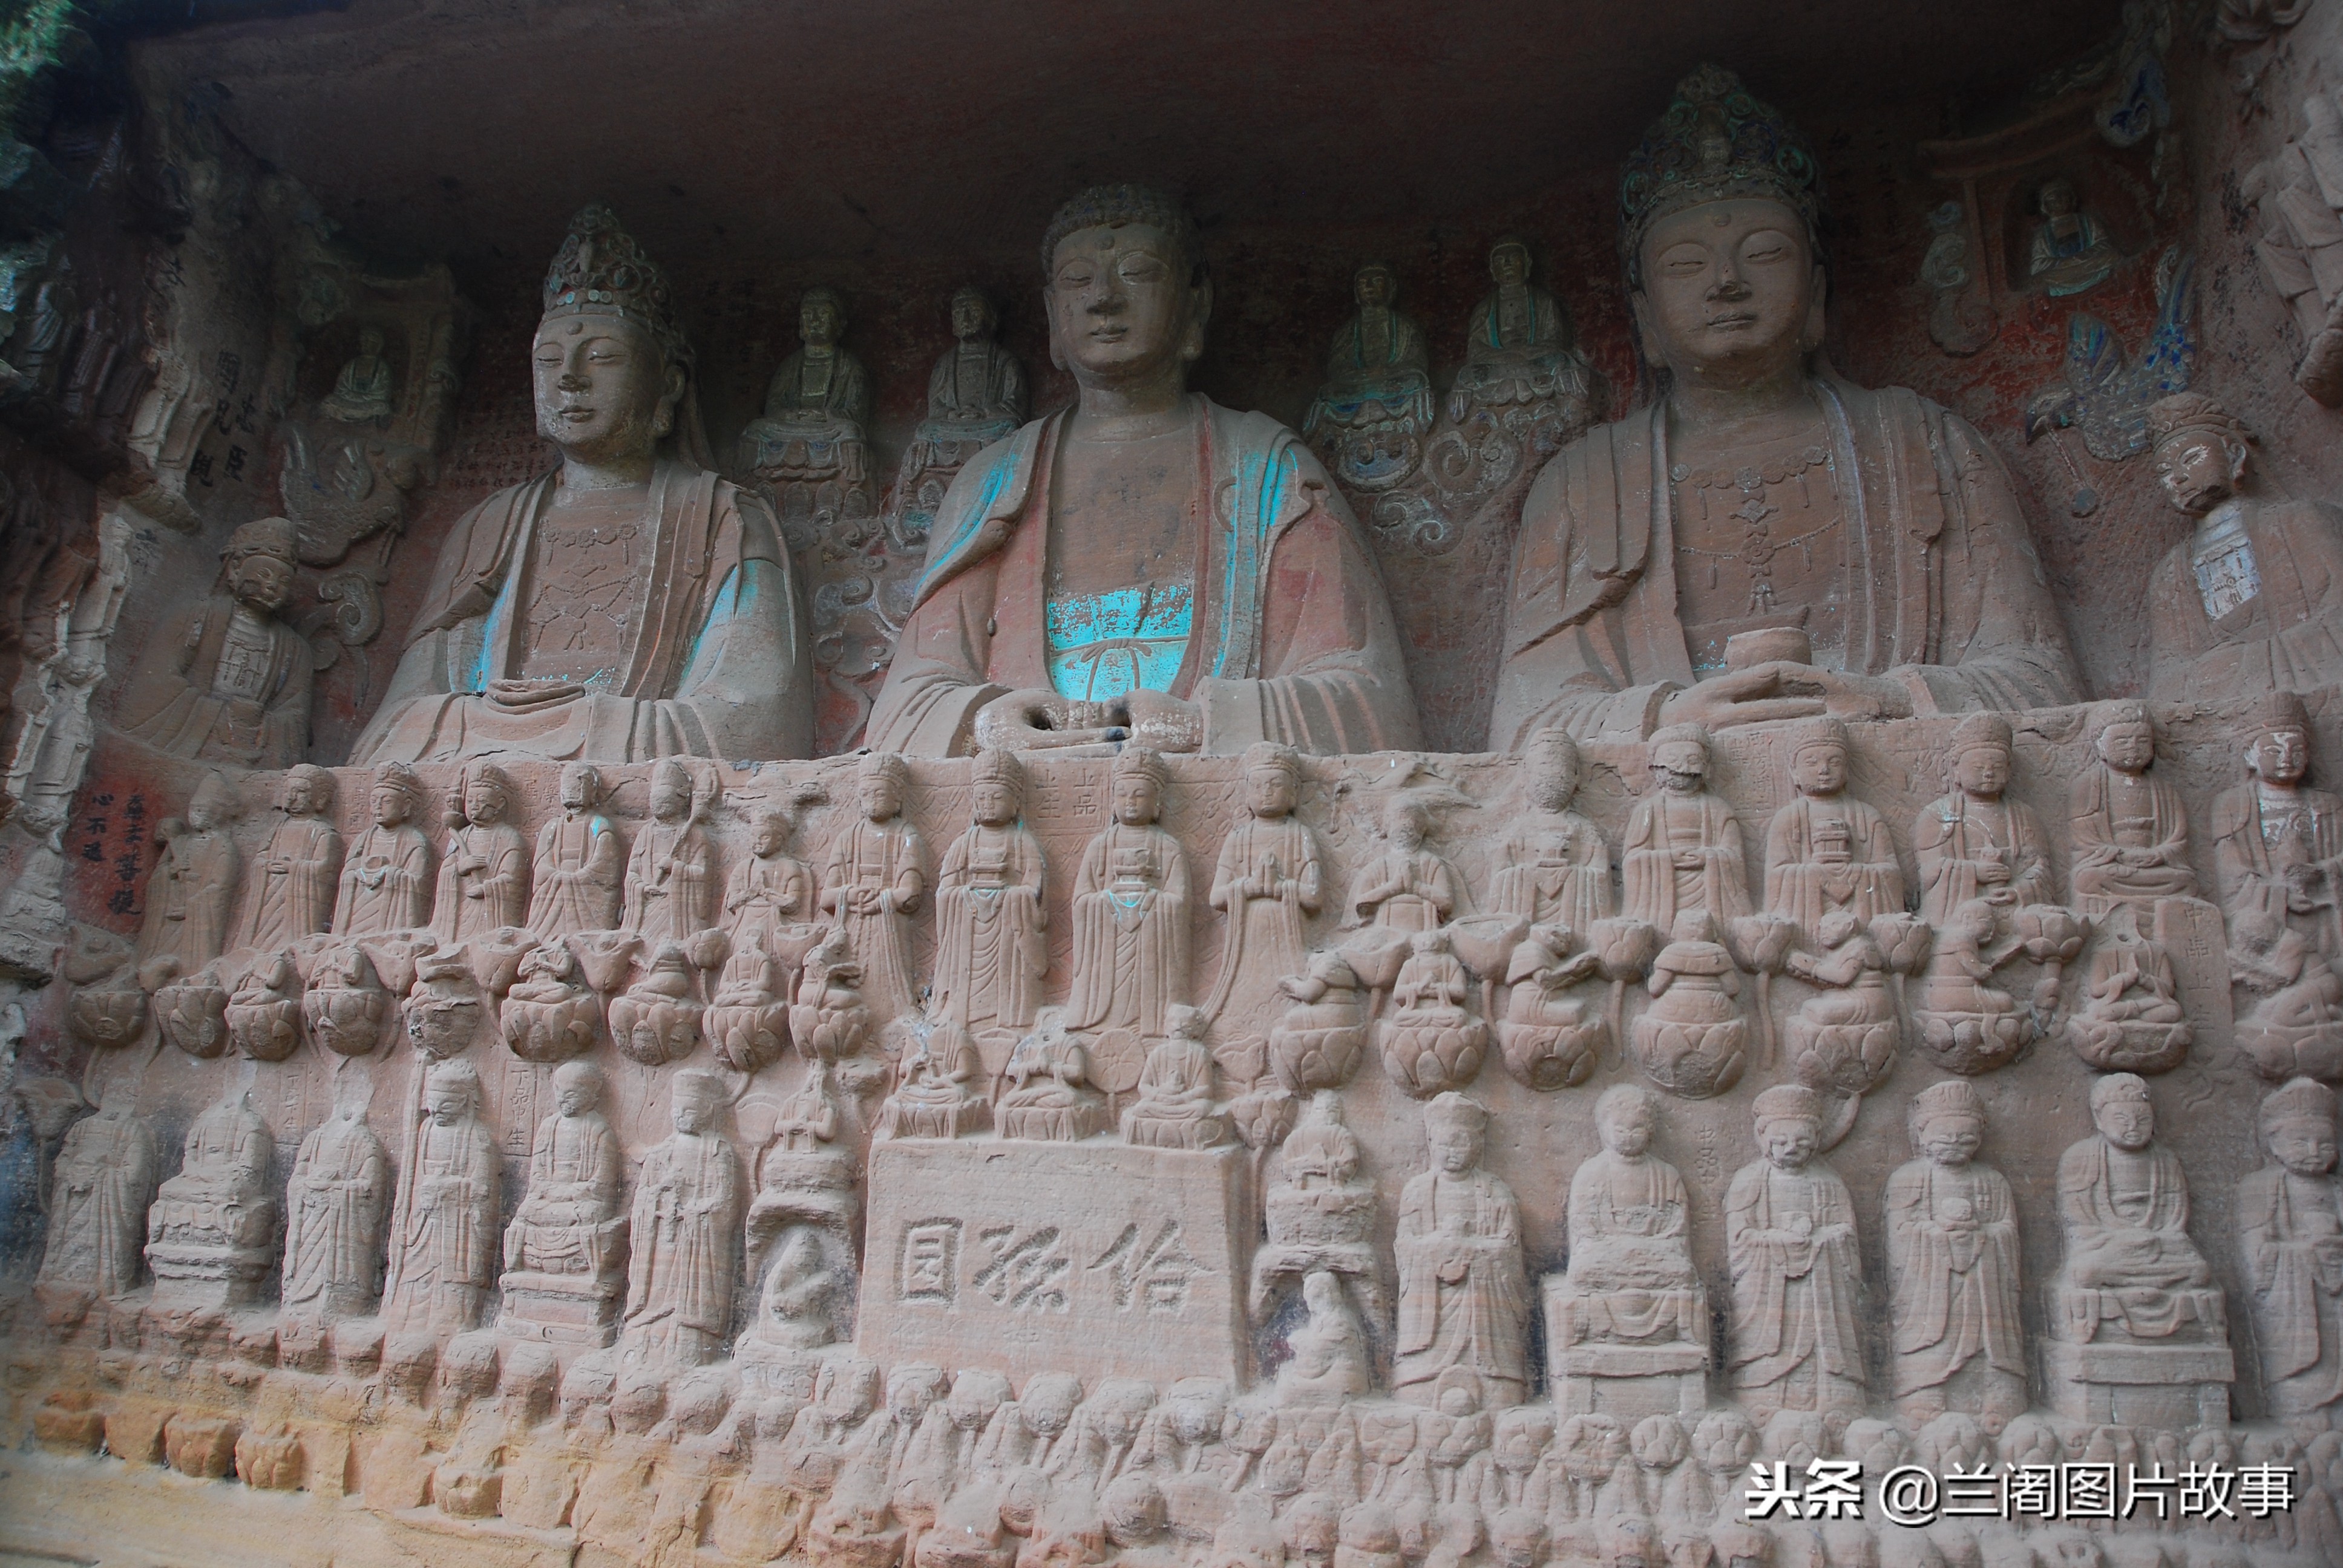 重庆大足石篆山摩崖石刻,世界文化遗产大足石刻的重要组成部分